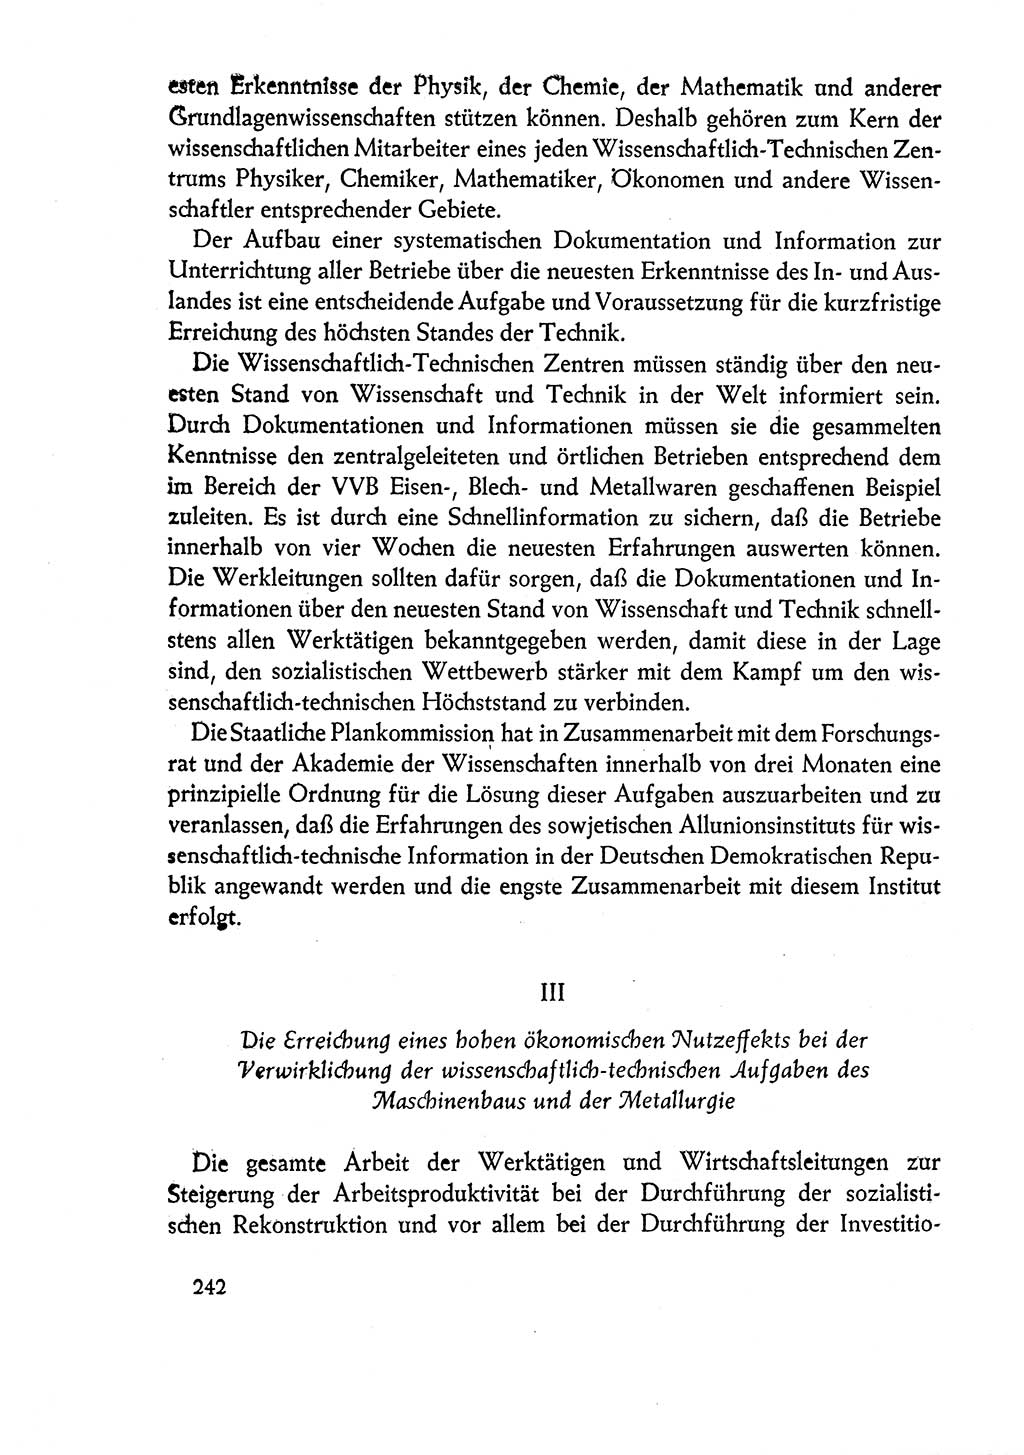 Dokumente der Sozialistischen Einheitspartei Deutschlands (SED) [Deutsche Demokratische Republik (DDR)] 1960-1961, Seite 242 (Dok. SED DDR 1960-1961, S. 242)